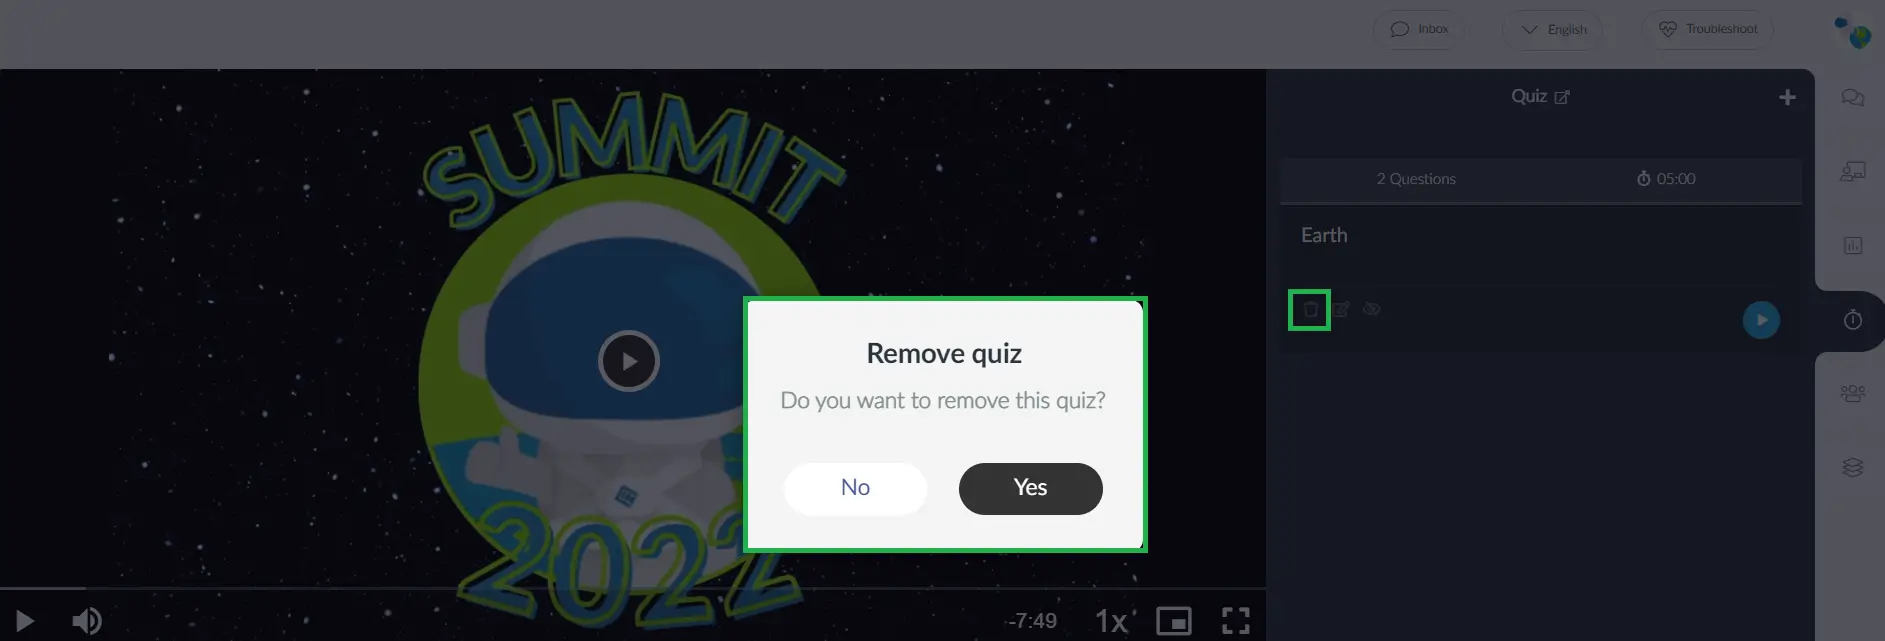 Remove the quiz